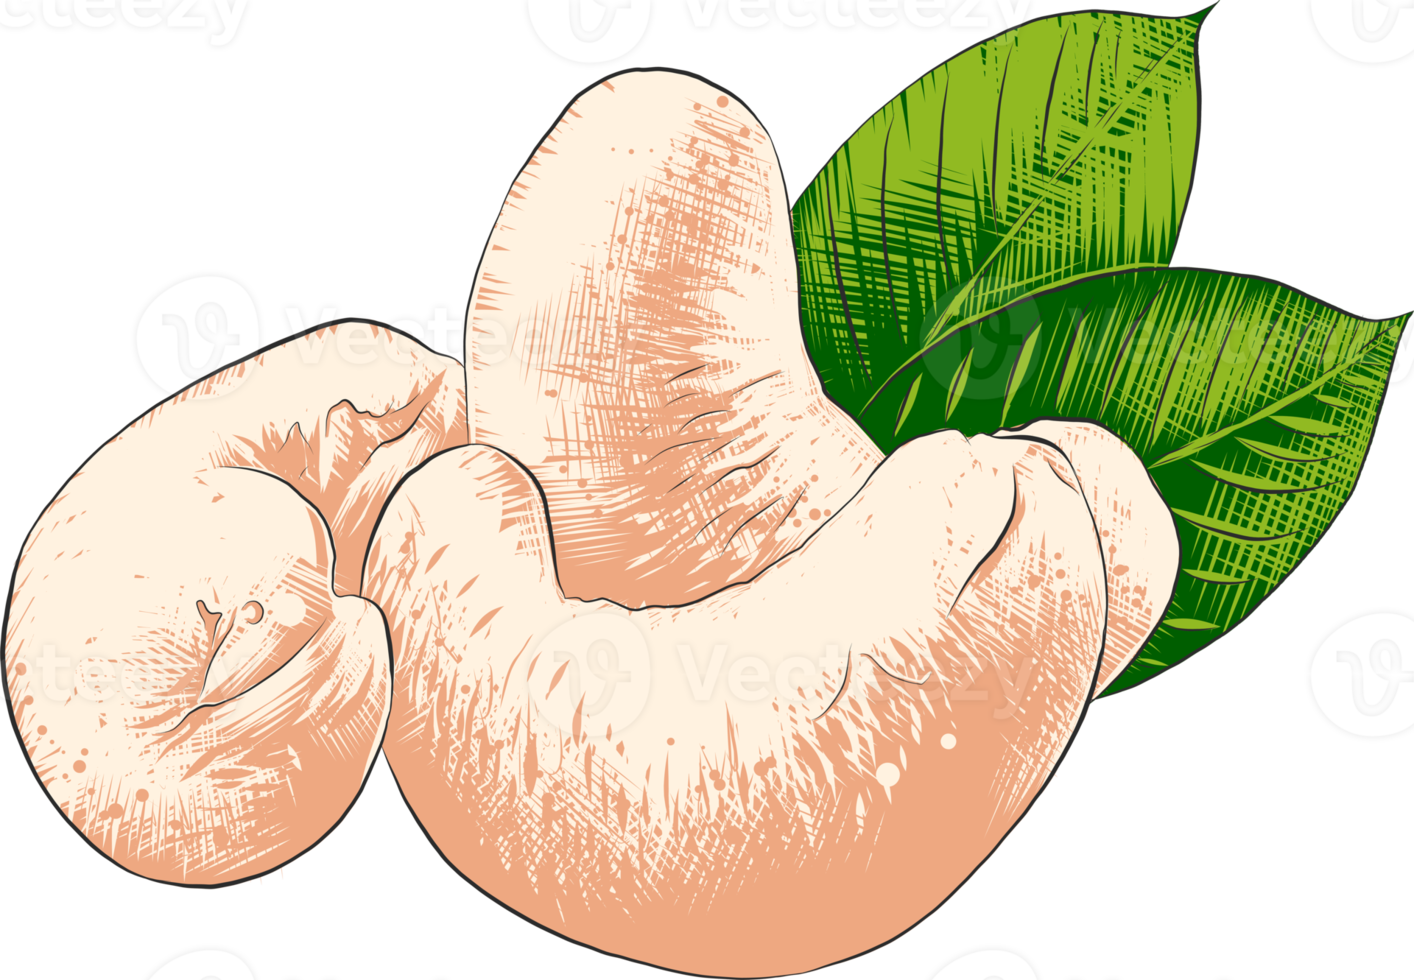 png organisk graverat stil illustration för affischer, dekoration, märka, förpackning och skriva ut. hand dragen skiss av kasju nötter i färgrik. detaljerad vegetarian mat teckning.